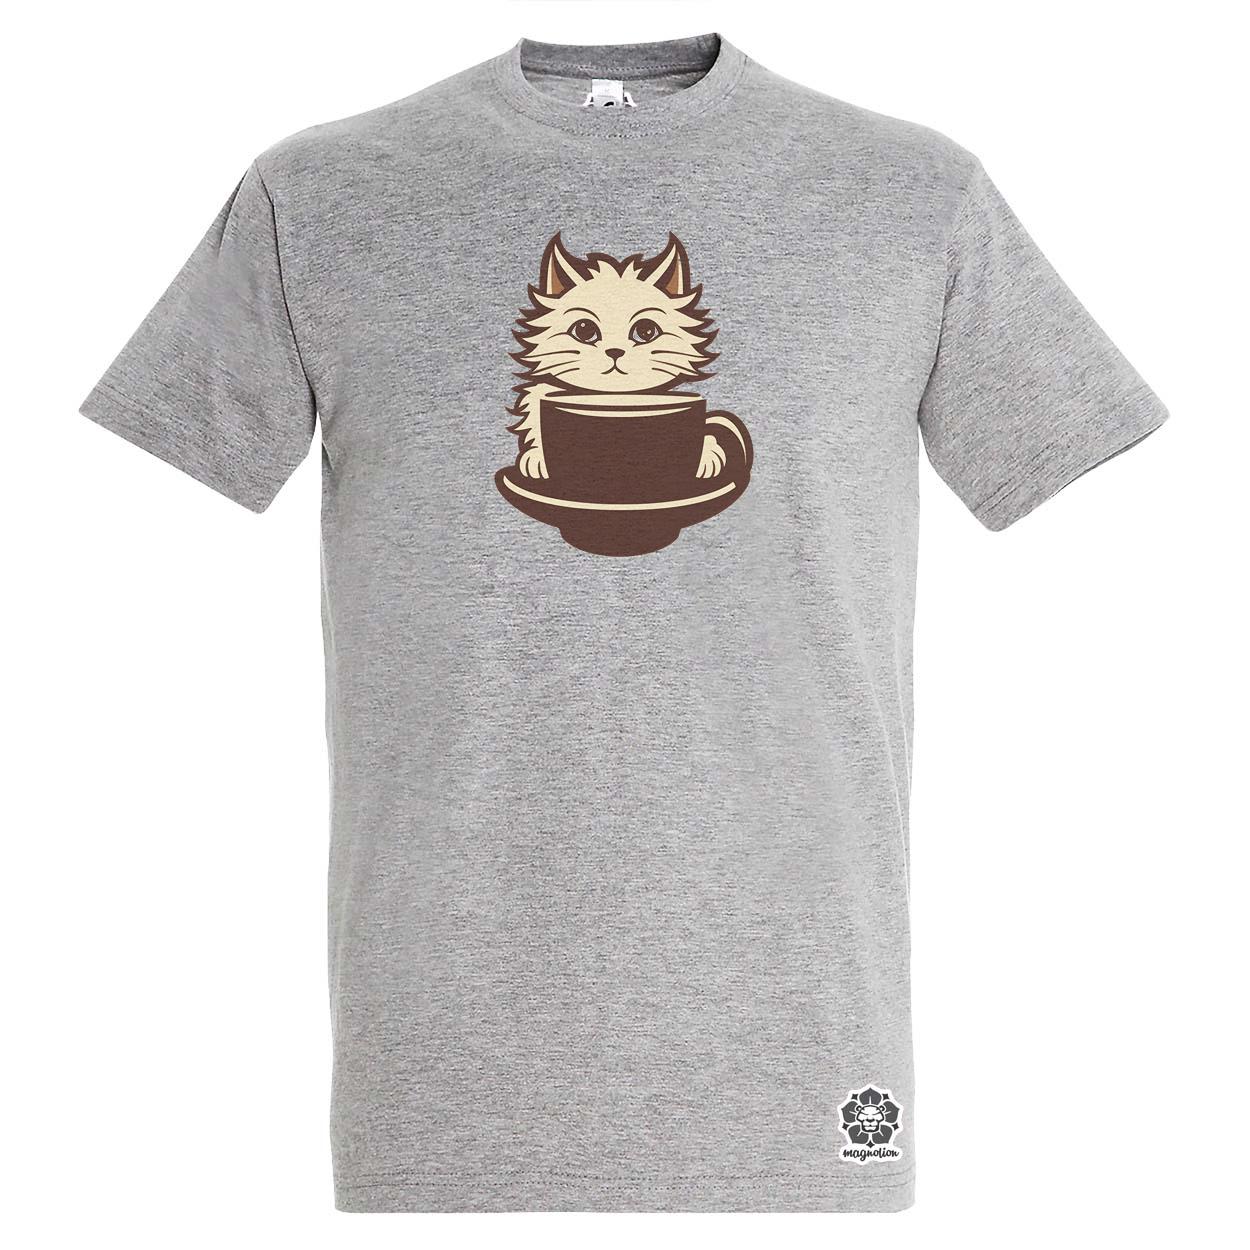 Macska és kávé v7